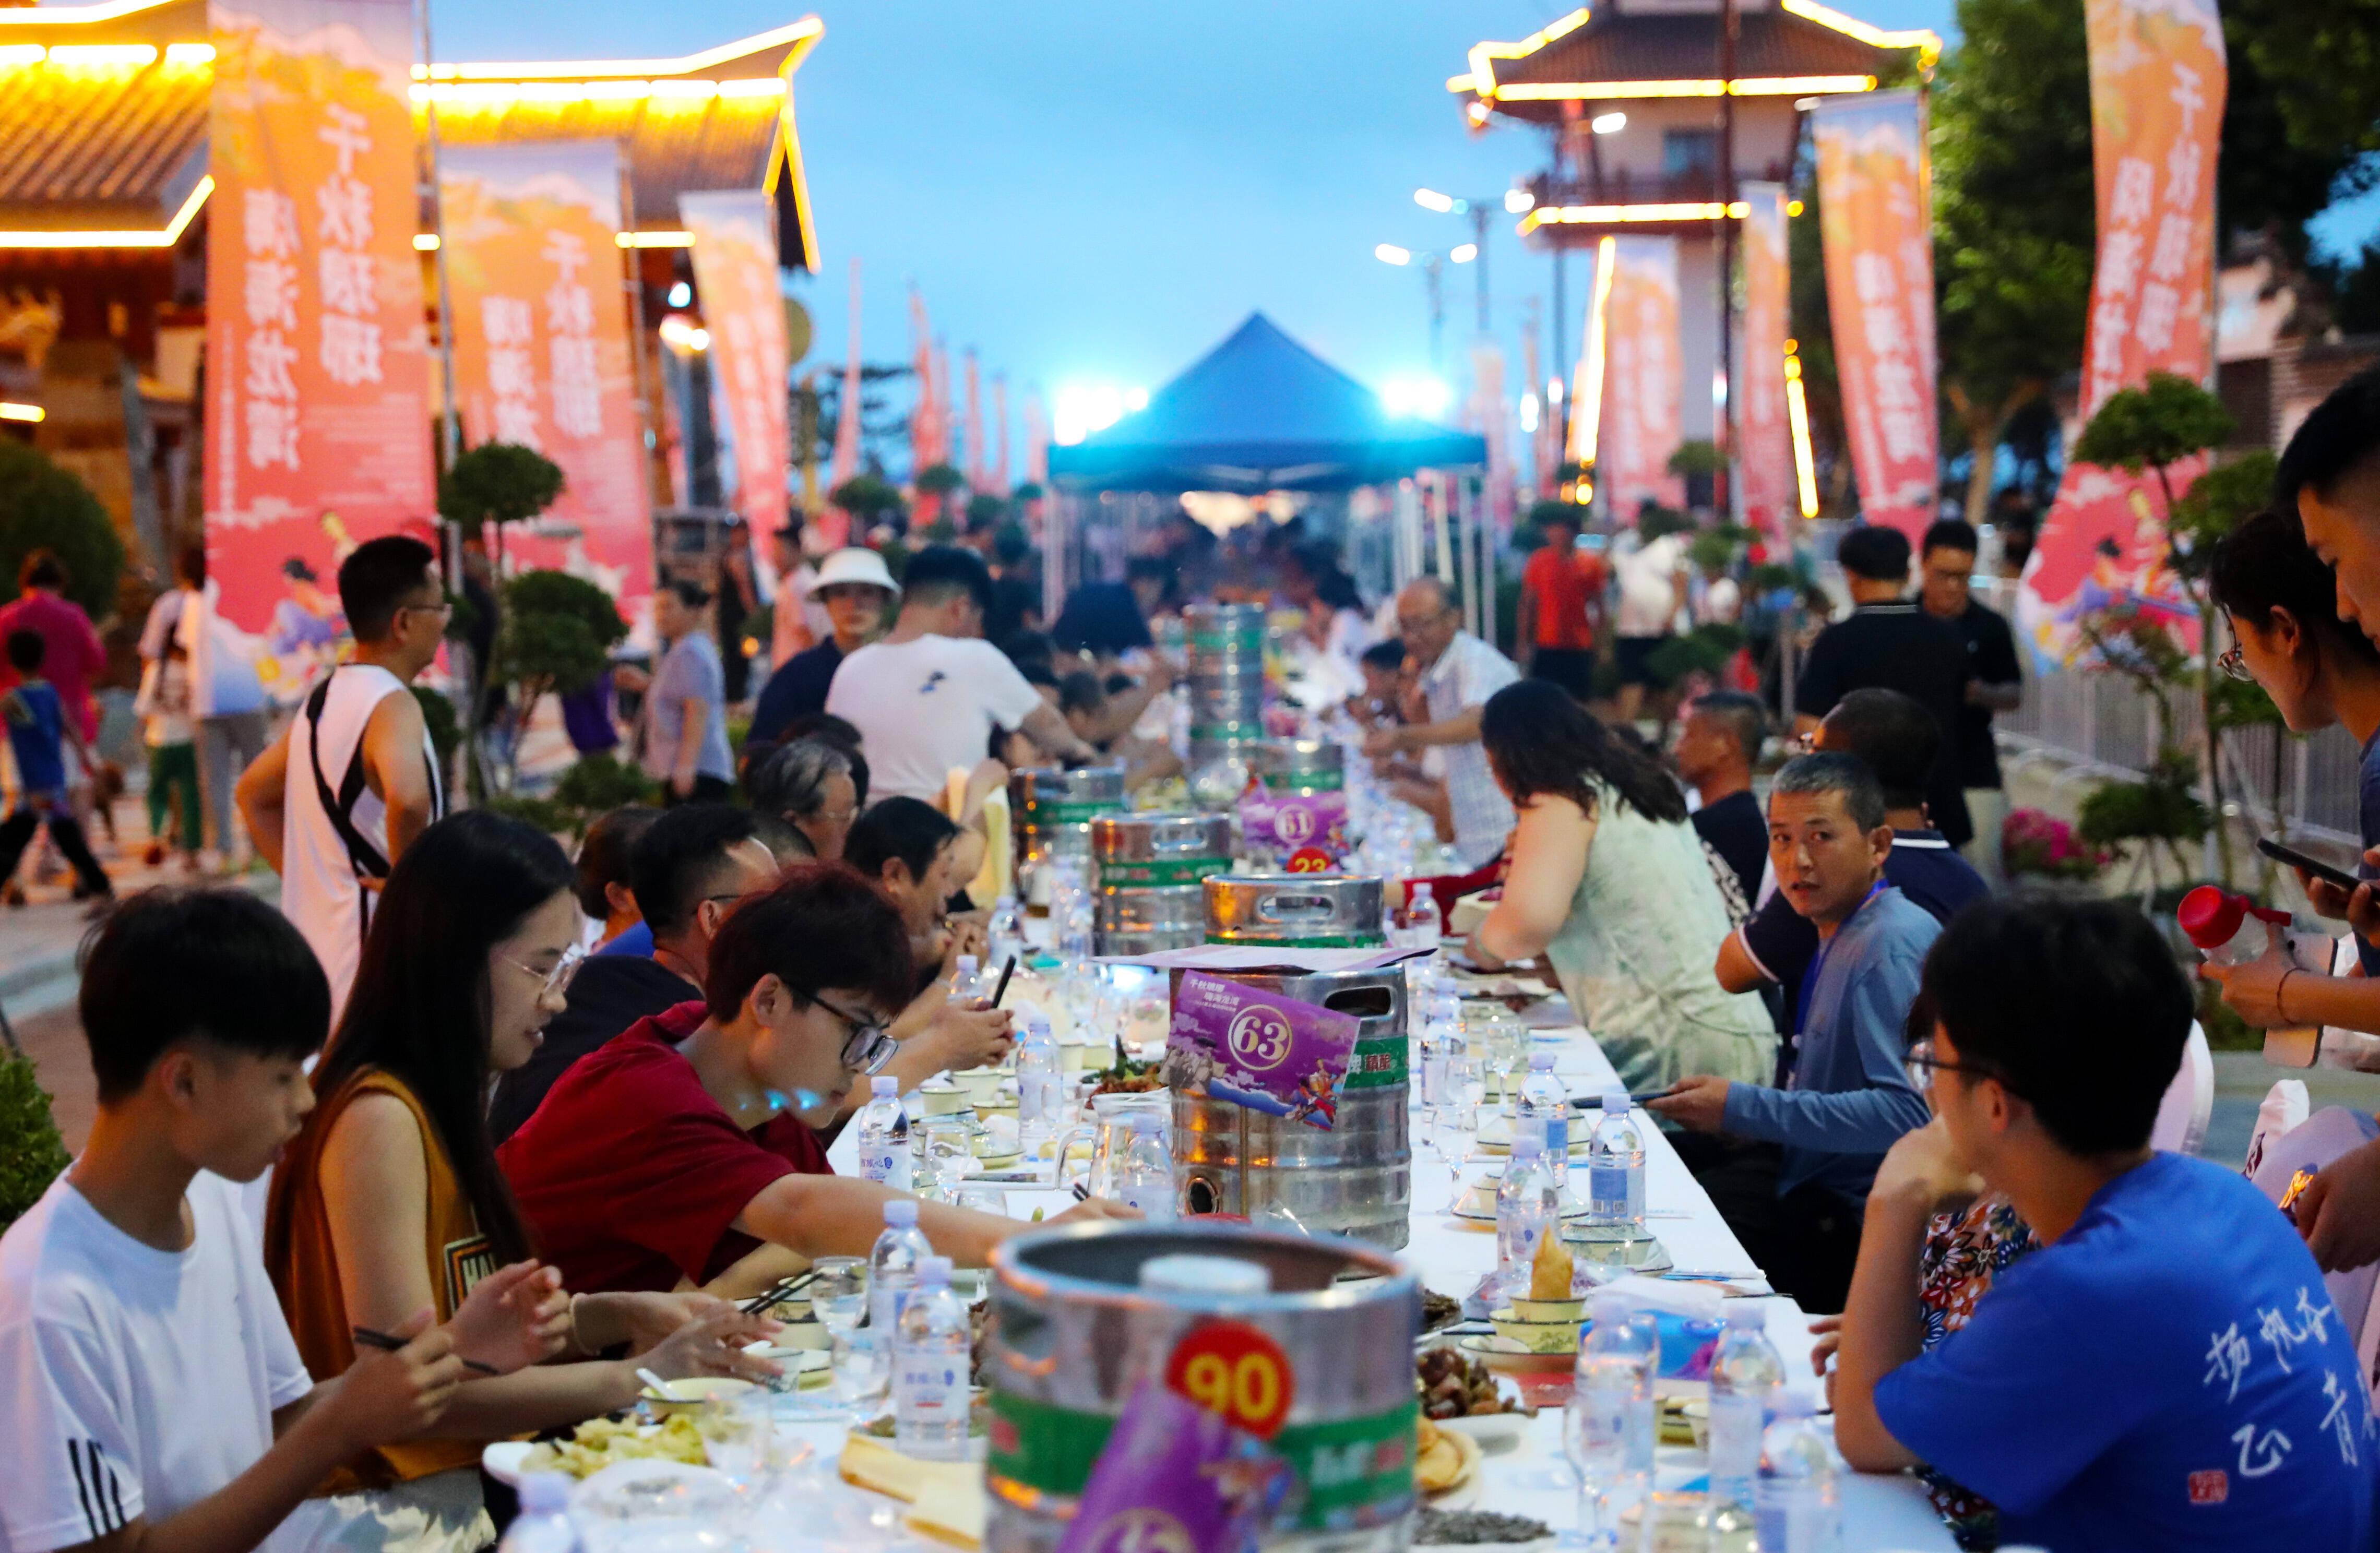 青岛琅琊镇举行长桌宴 游客品特色海鲜感受传统渔家风情